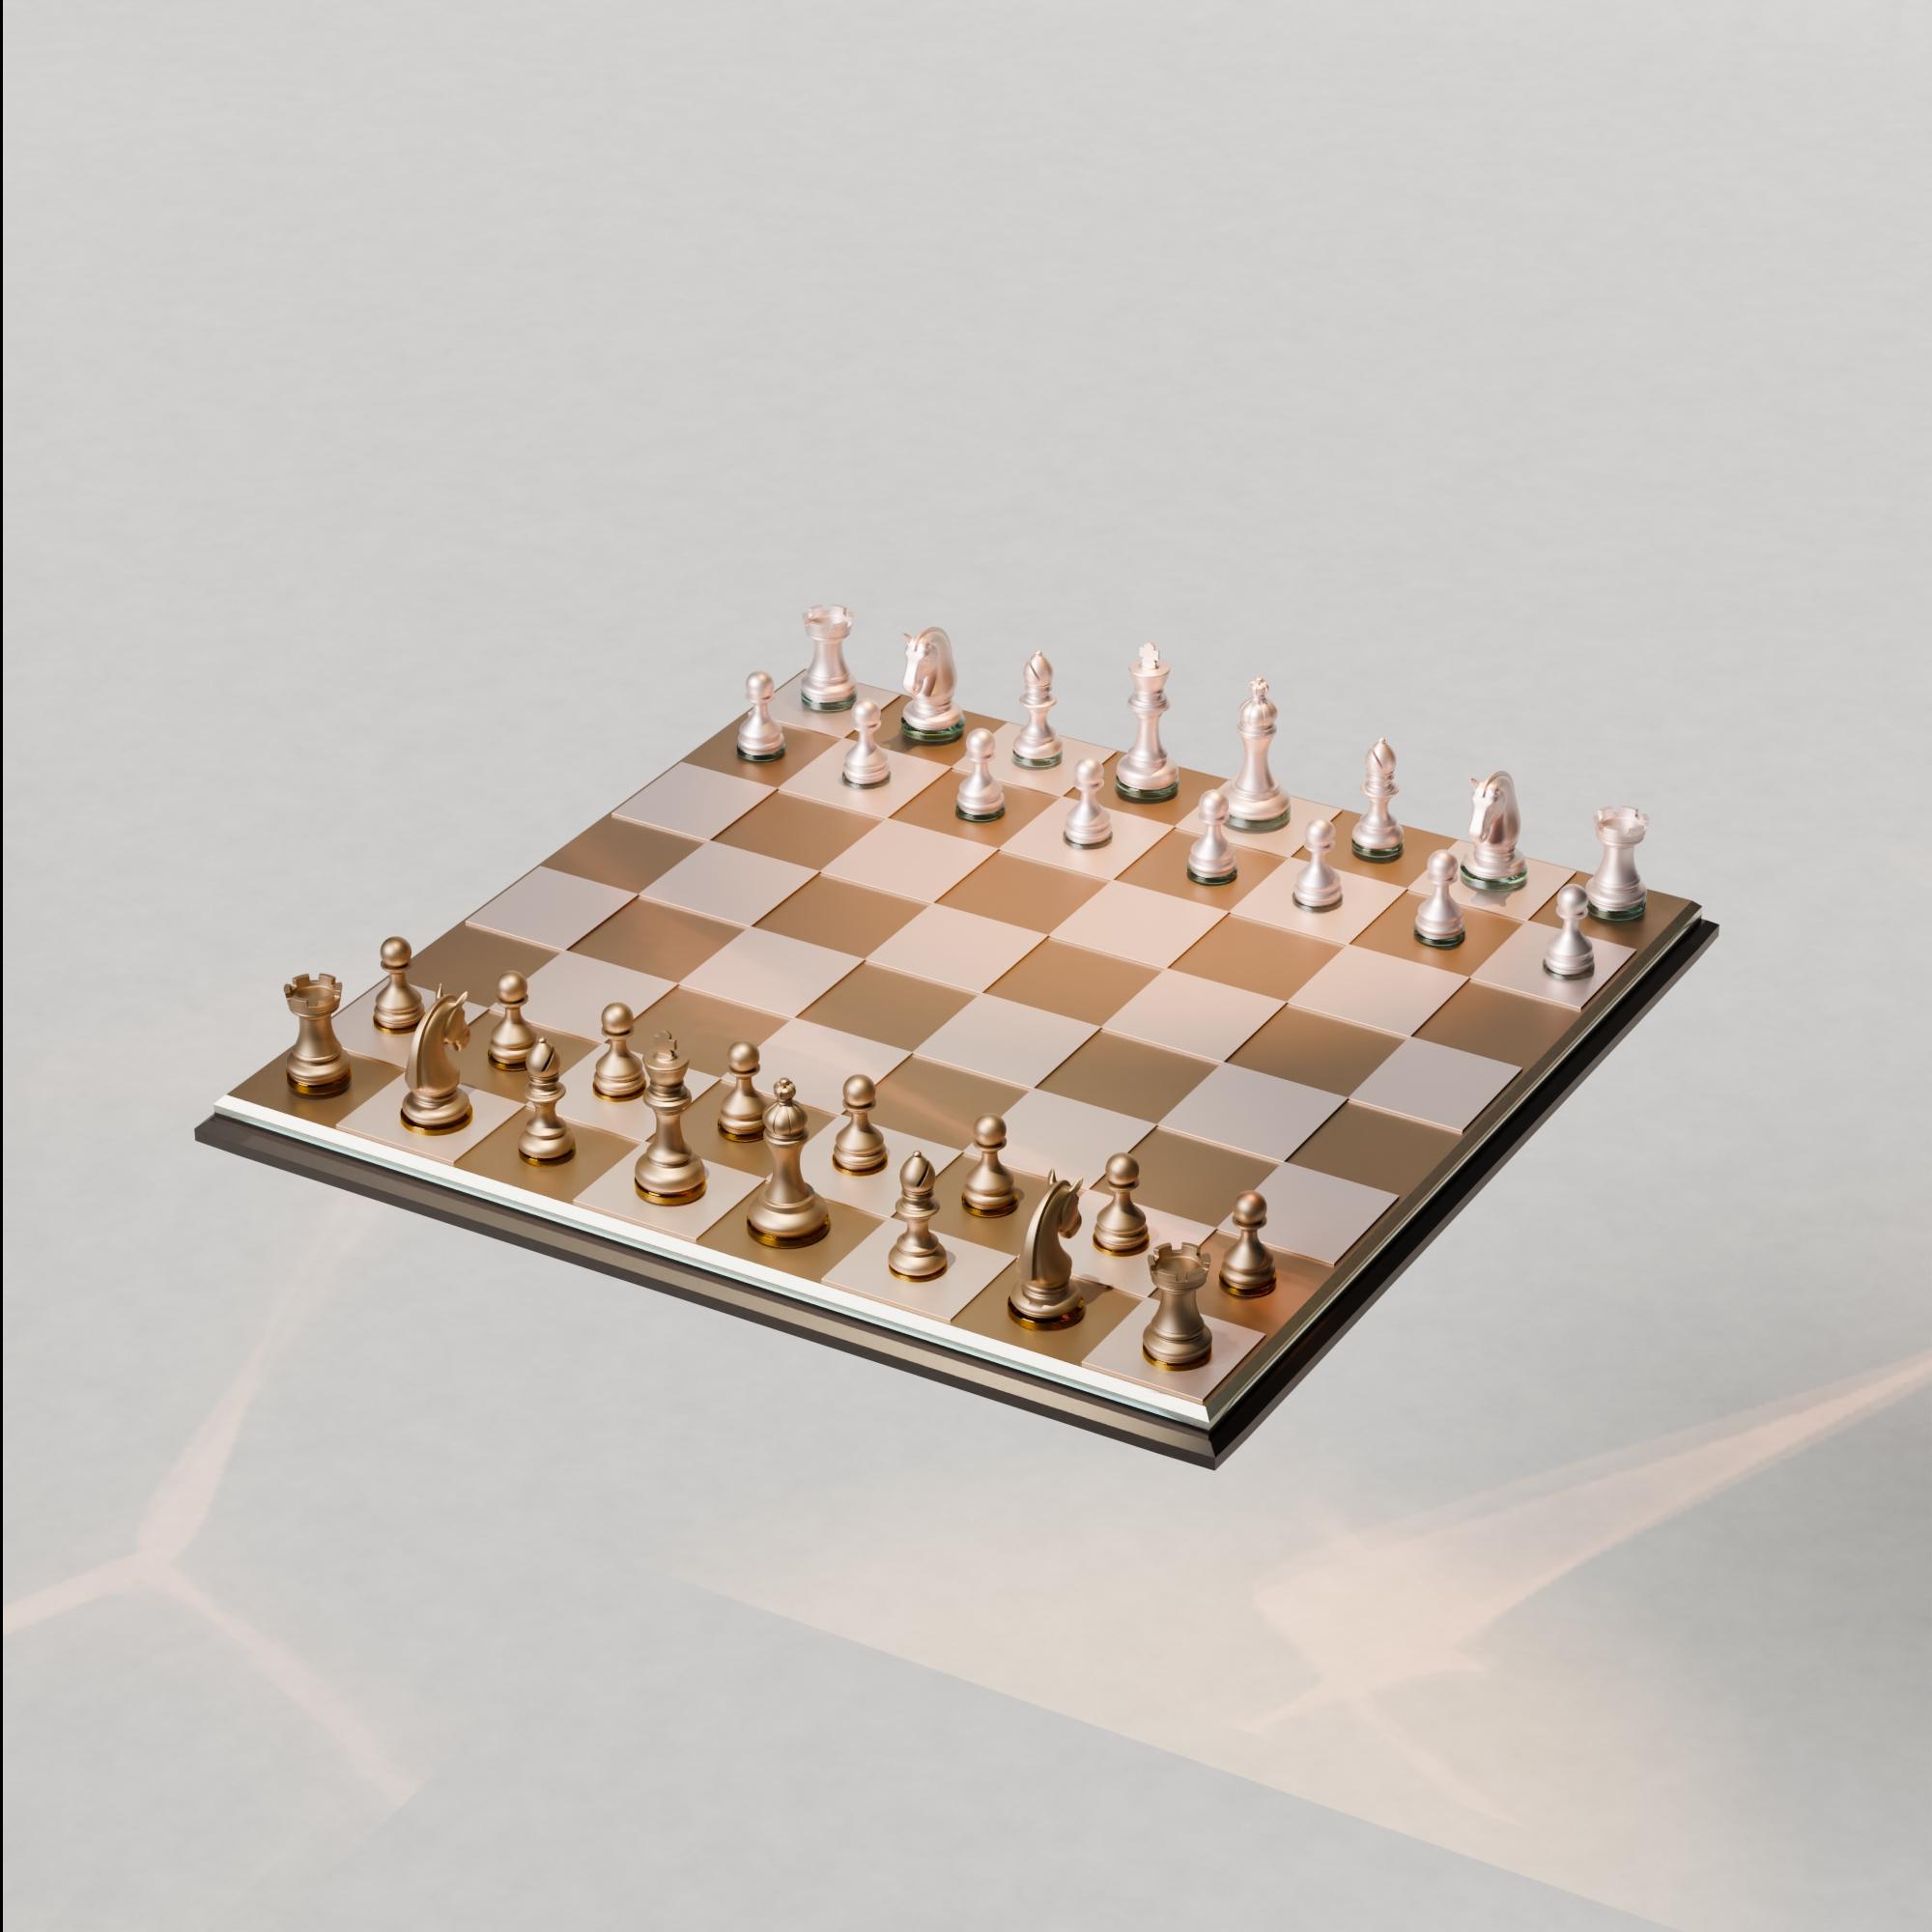 Classic Chess Set 3d model